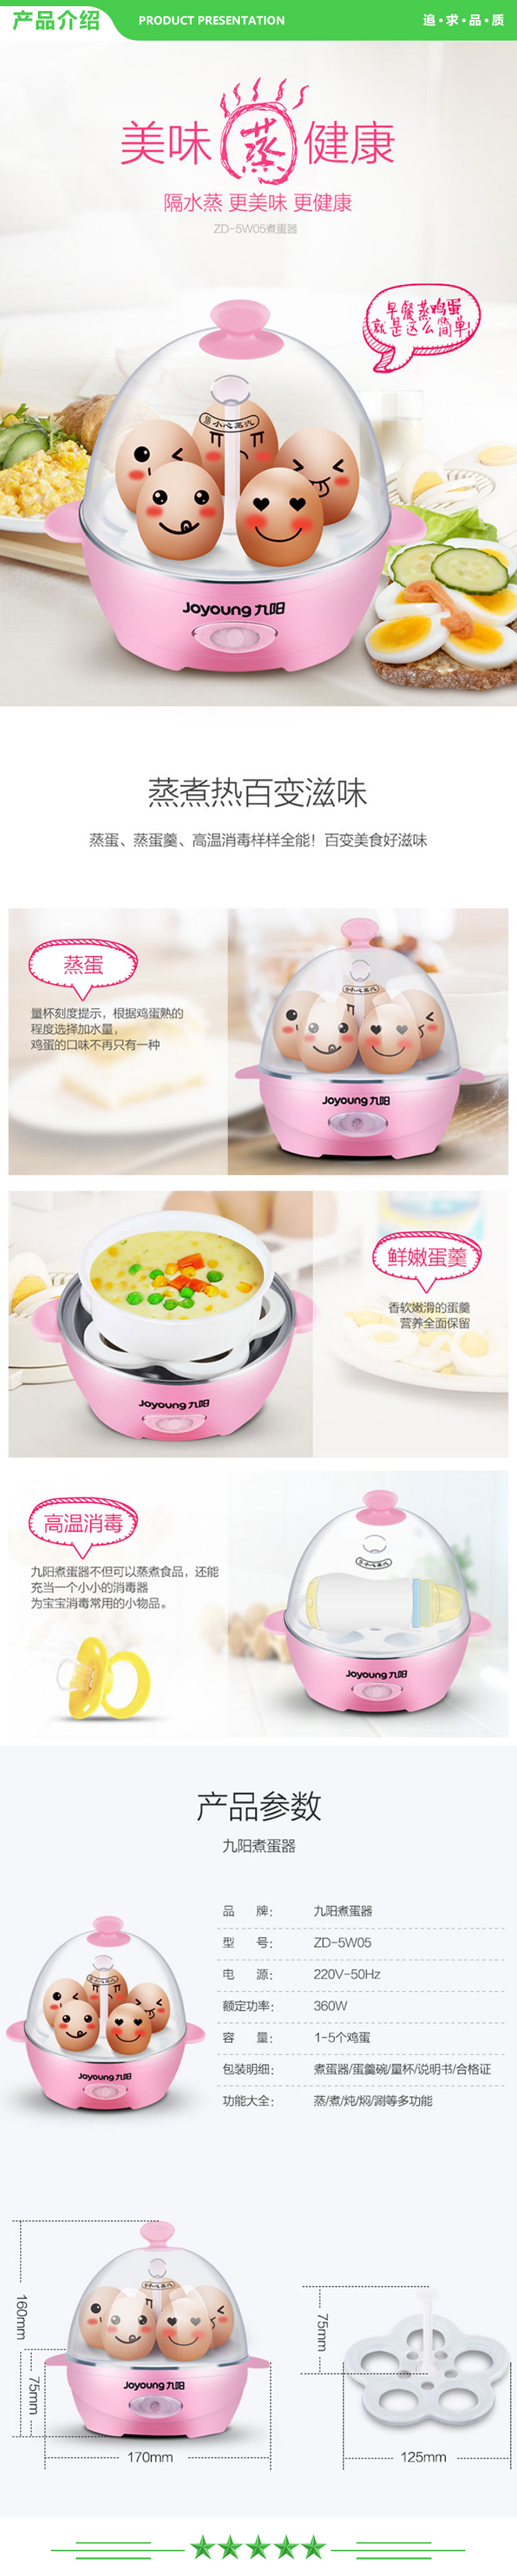 九阳 Joyoung ZD-5W05 煮蛋器 多功能智能早餐蒸蛋器自动断电5个蛋量.jpg